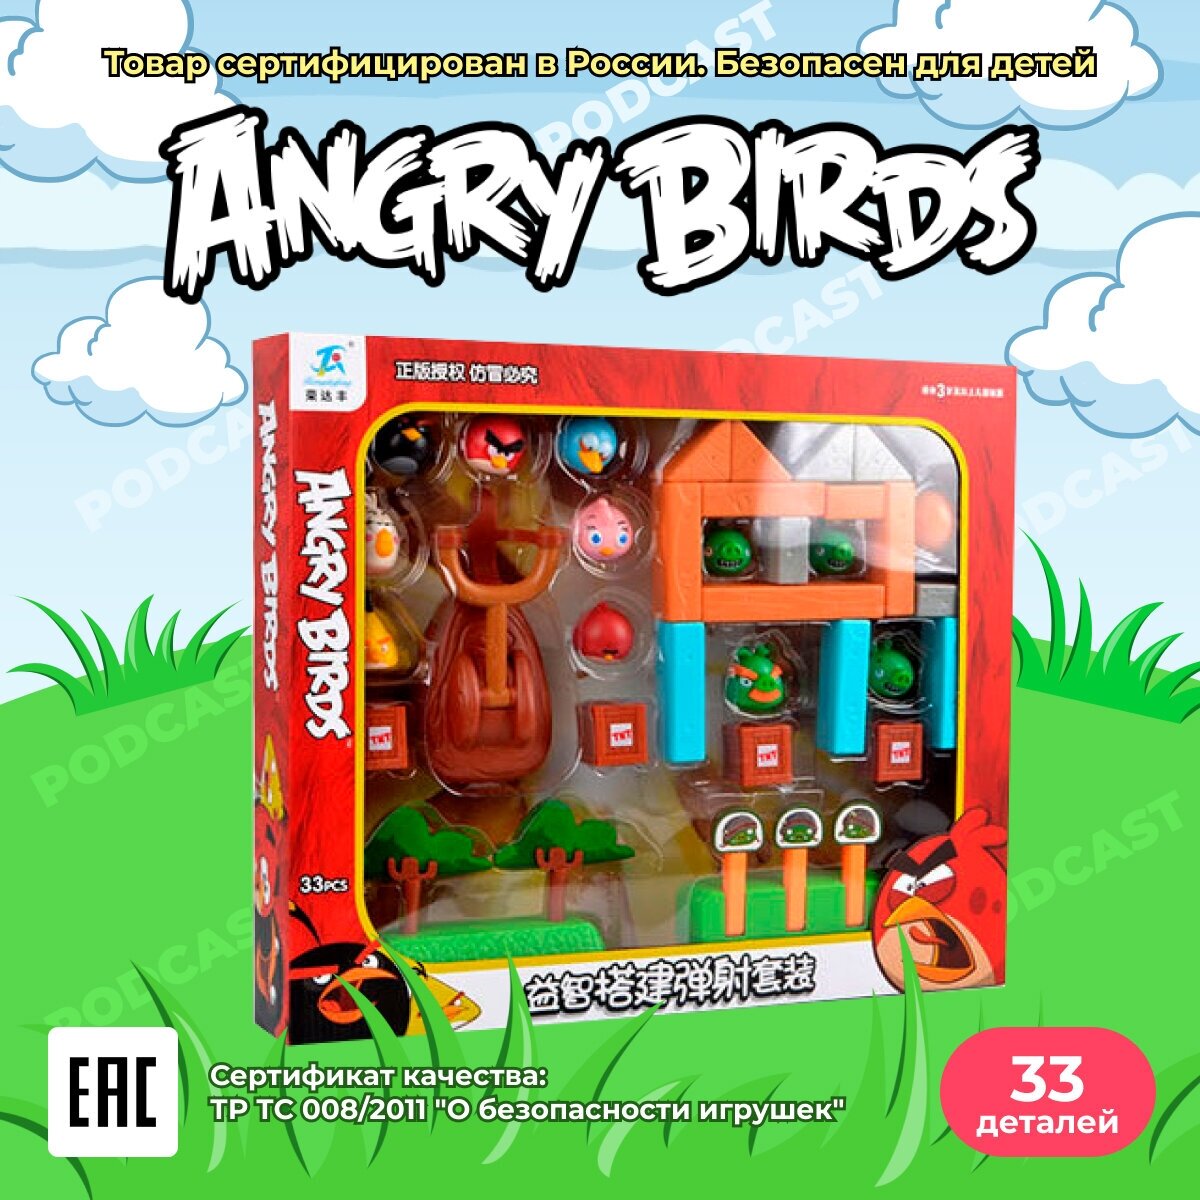 Детский игровой набор Злые Птички для девочек и мальчиков / игрушка Angry Birds развивающая с рогаткой, 33 шт.